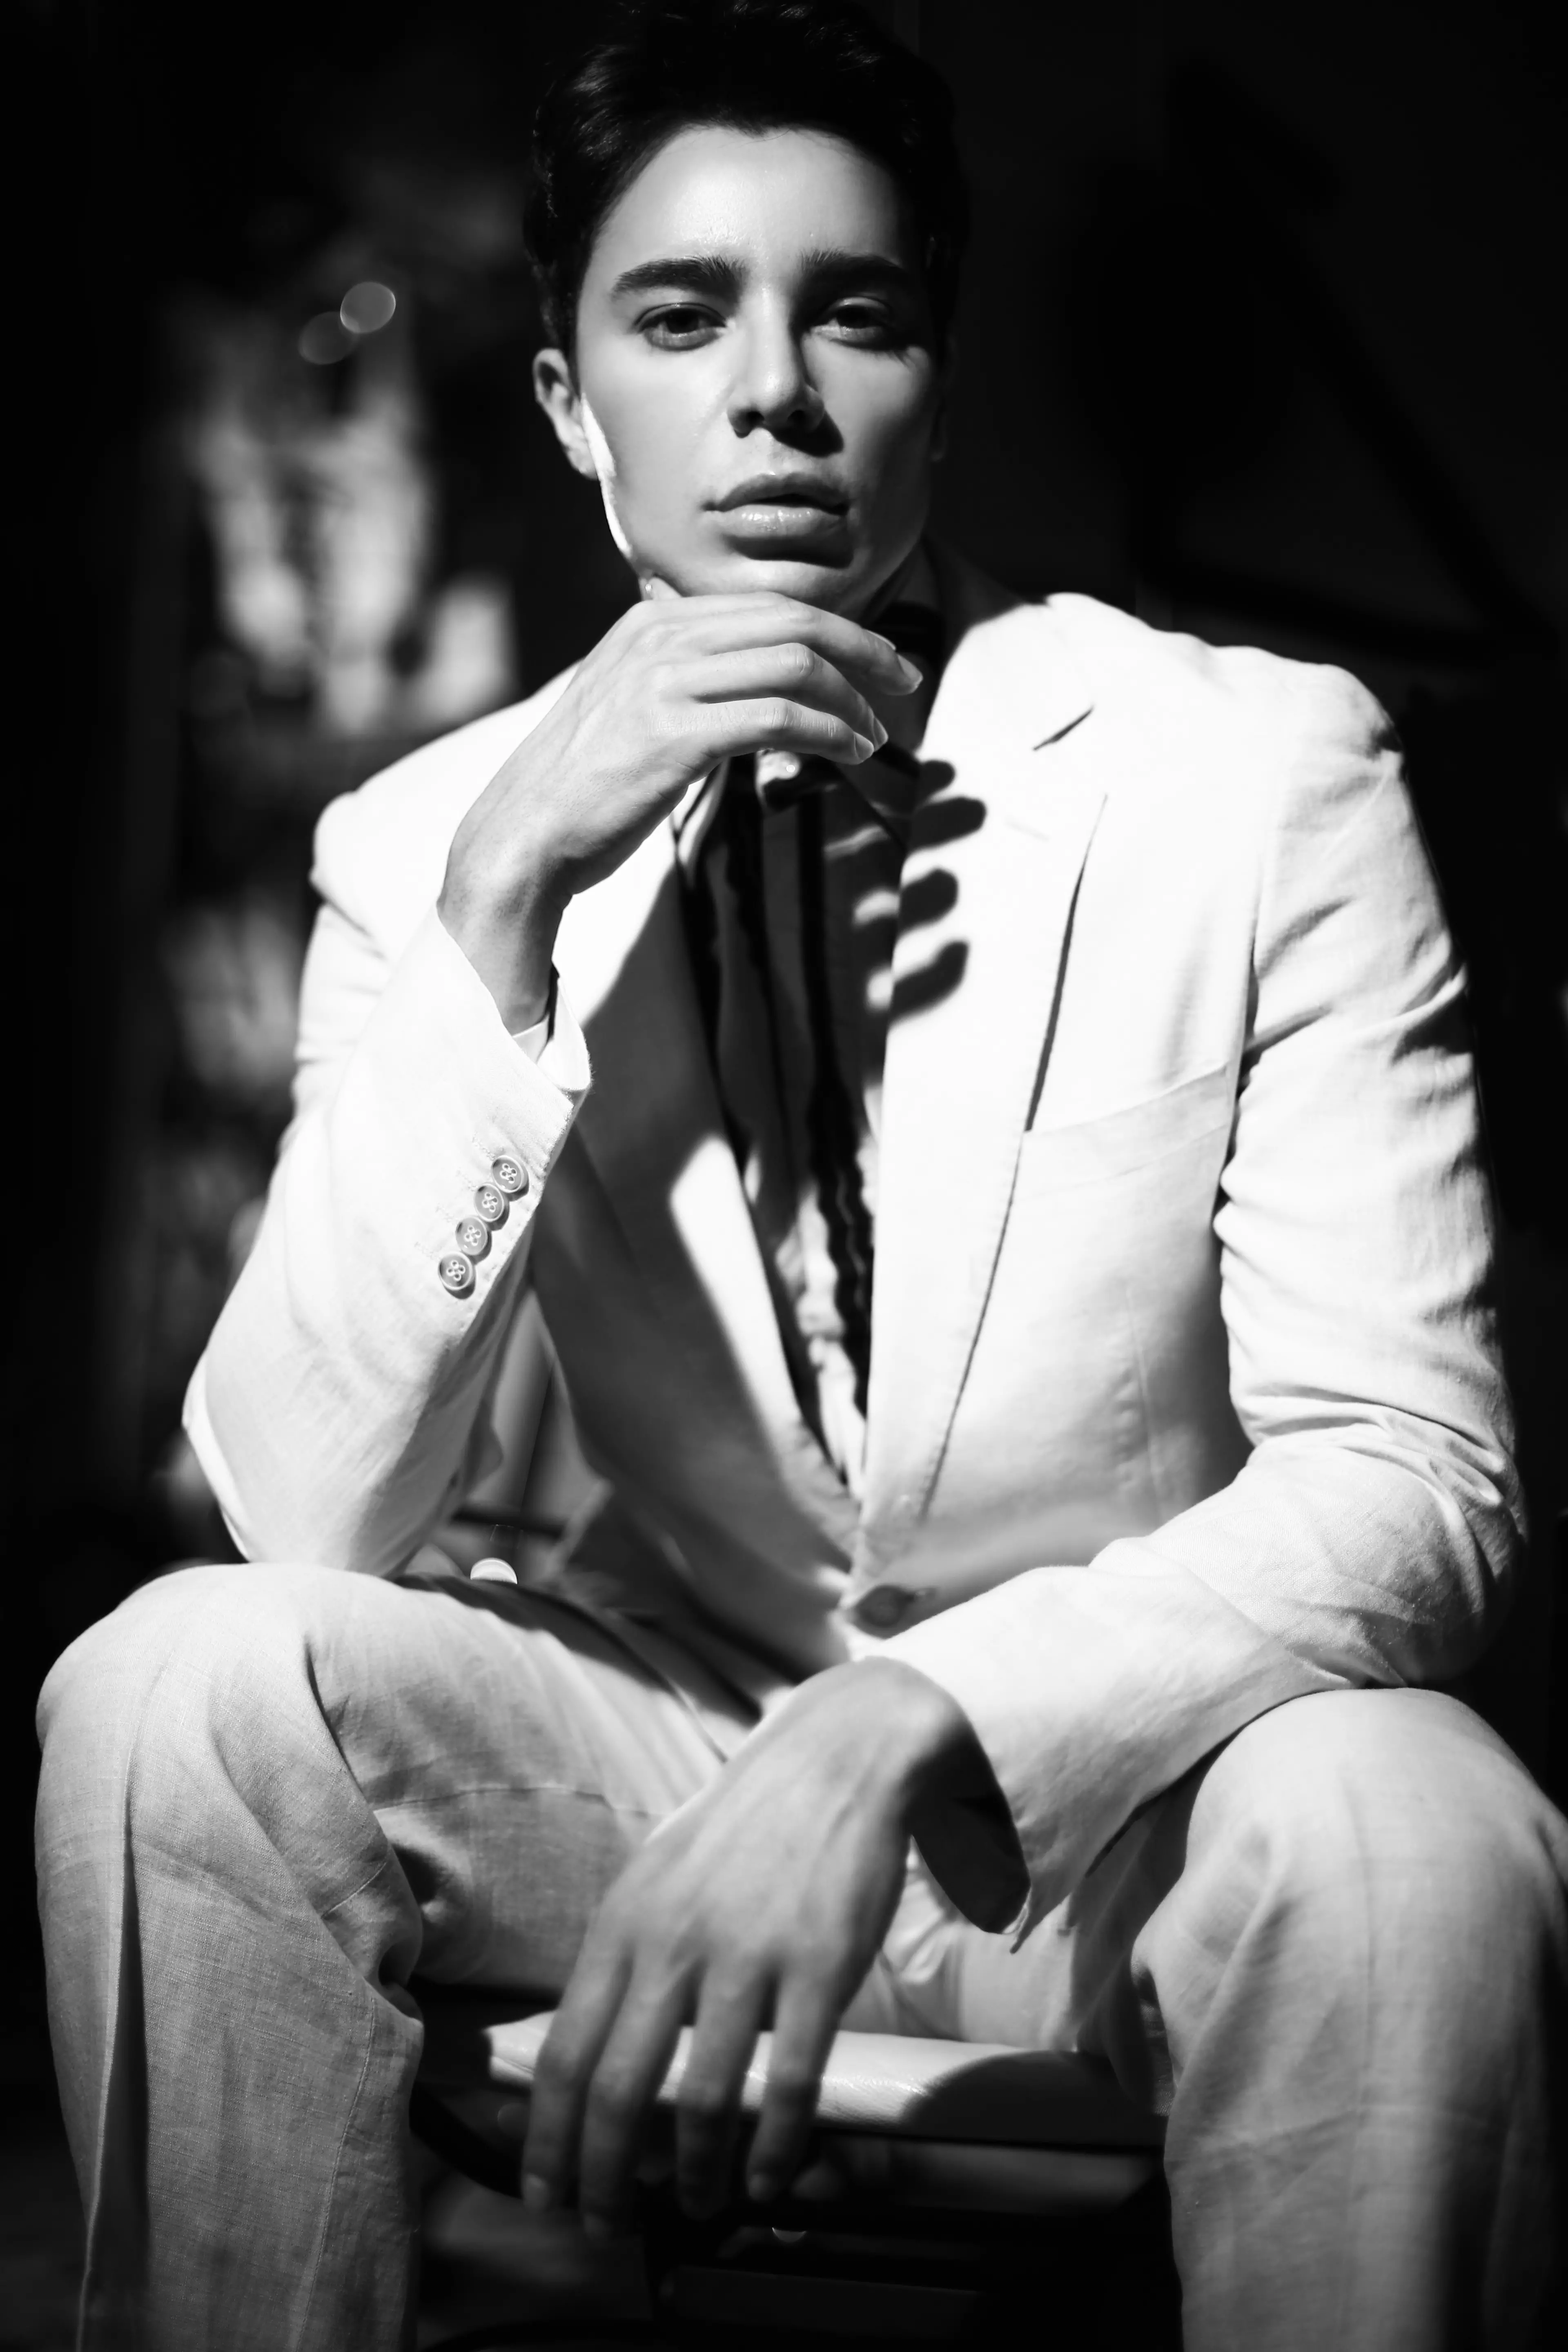 Editorial de moda exclusiva co modelo masculino Iccaro Pereira interpretado por Nicky Guanawan para Lewis Magazine, unha revista editorial web. Diseñado por Amelie Poerwoko.